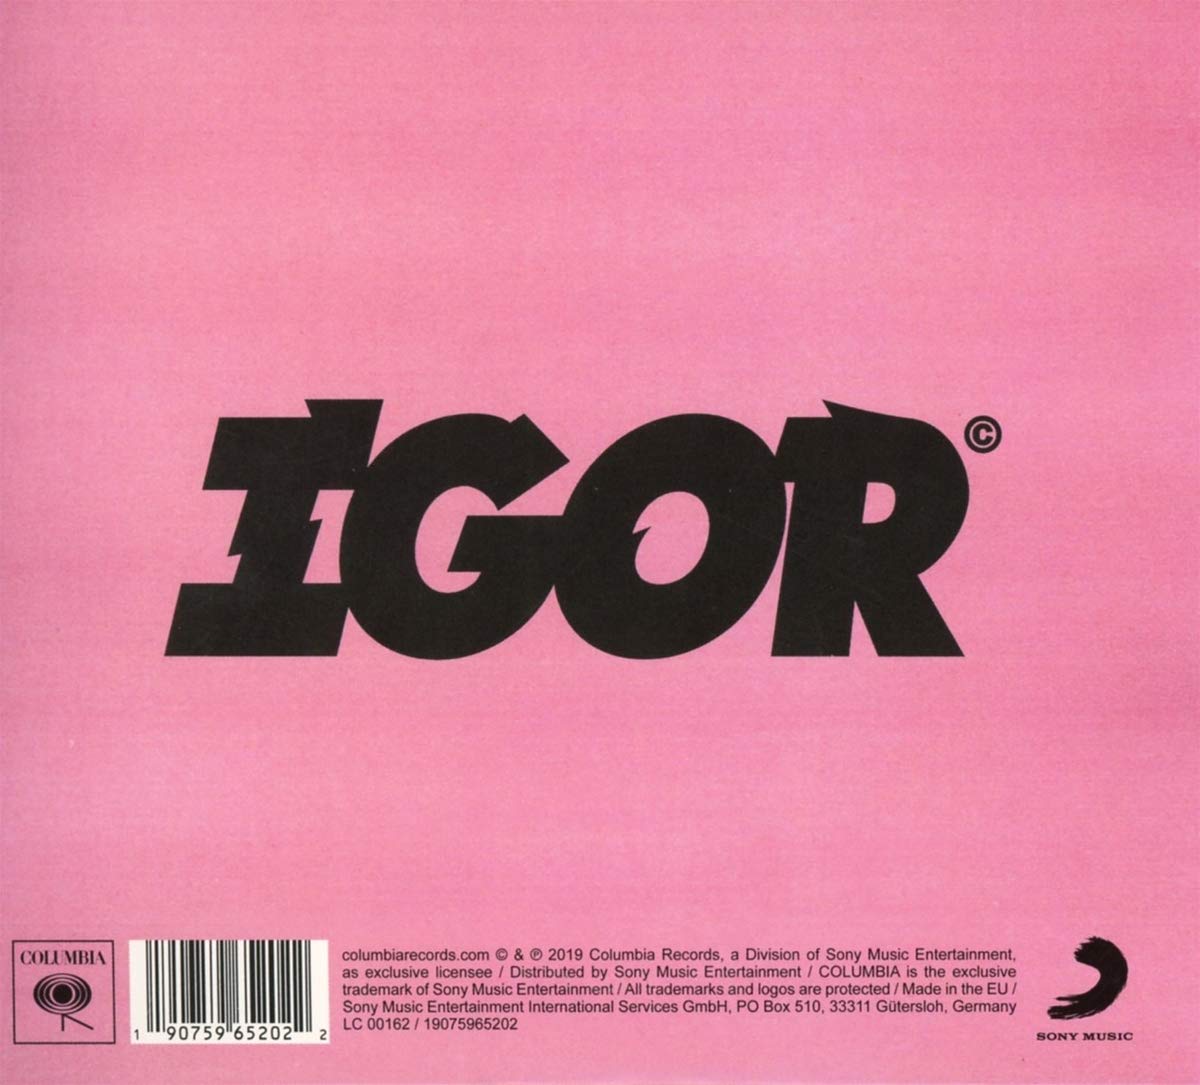 Tyler, The Creator/Igor [CD]